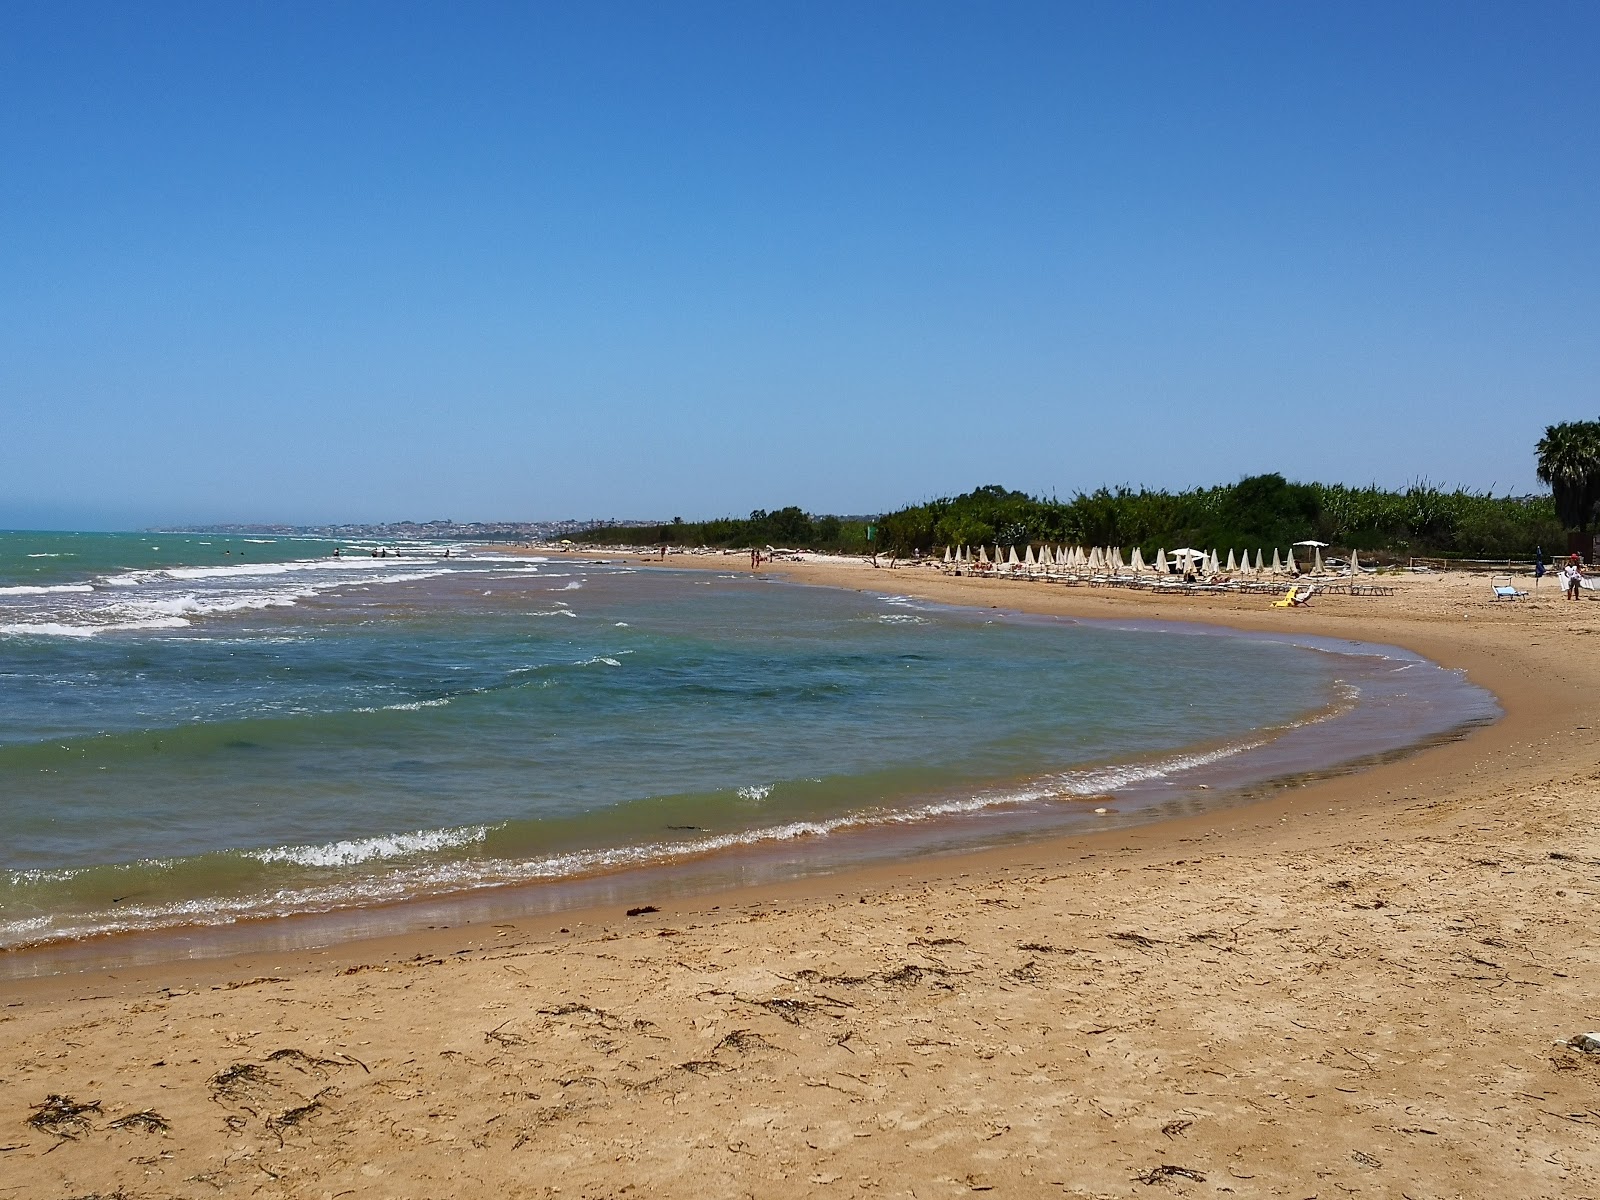 Fotografie cu Playa Grande cu o suprafață de nisip strălucitor